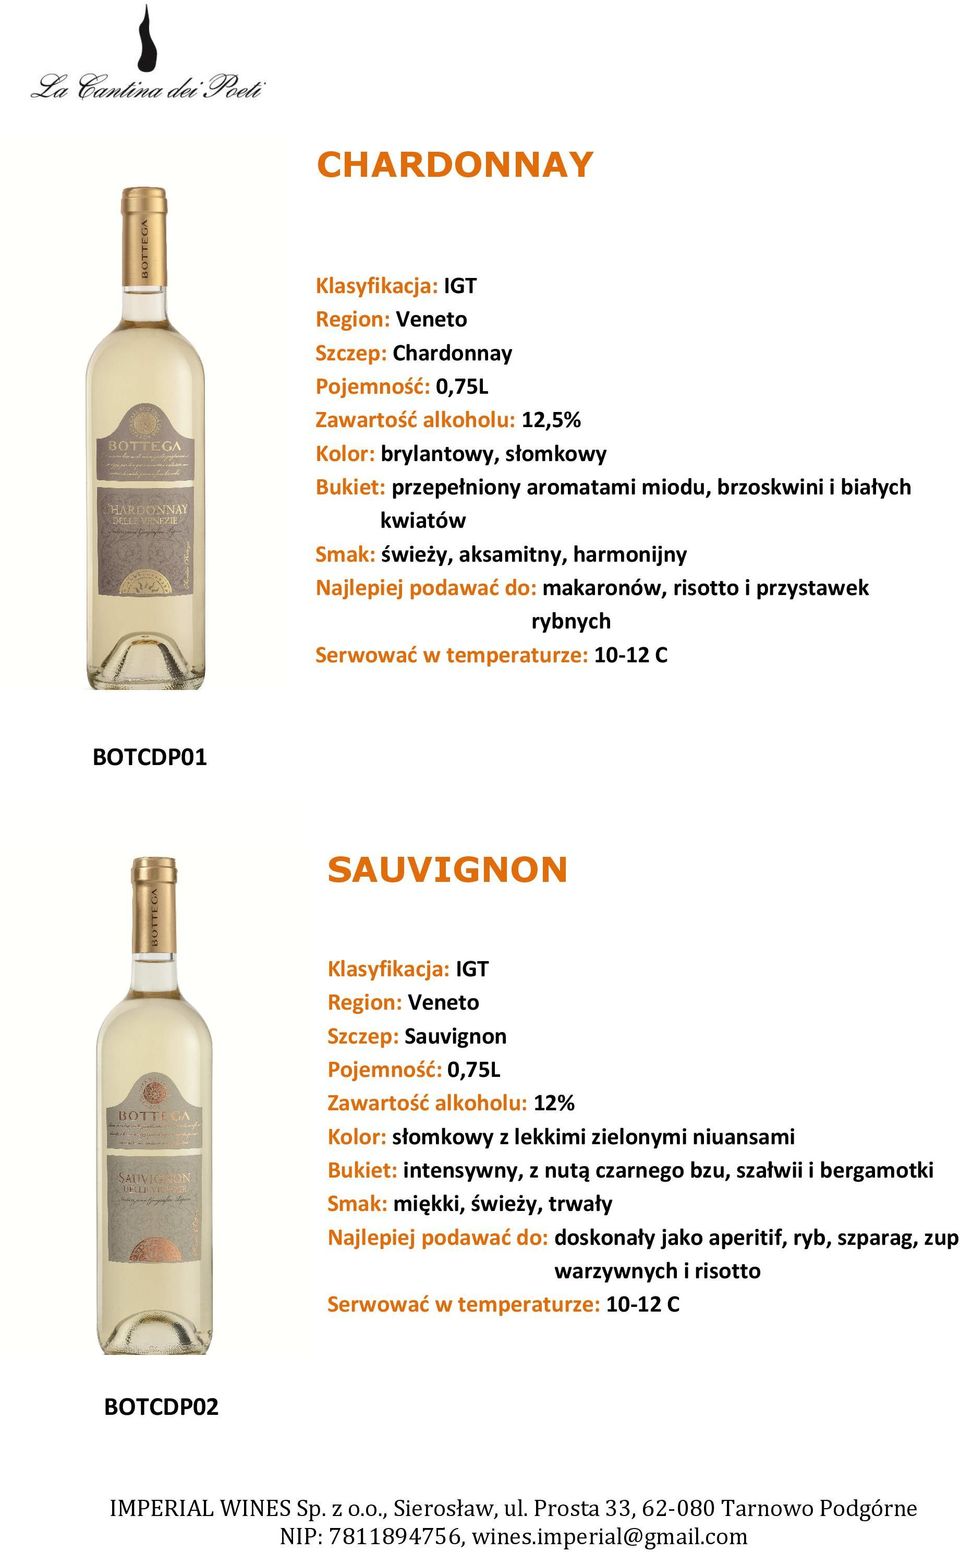 Region: Veneto Szczep: Sauvignon Zawartość alkoholu: 12% Kolor: słomkowy z lekkimi zielonymi niuansami Bukiet: intensywny, z nutą czarnego bzu, szałwii i